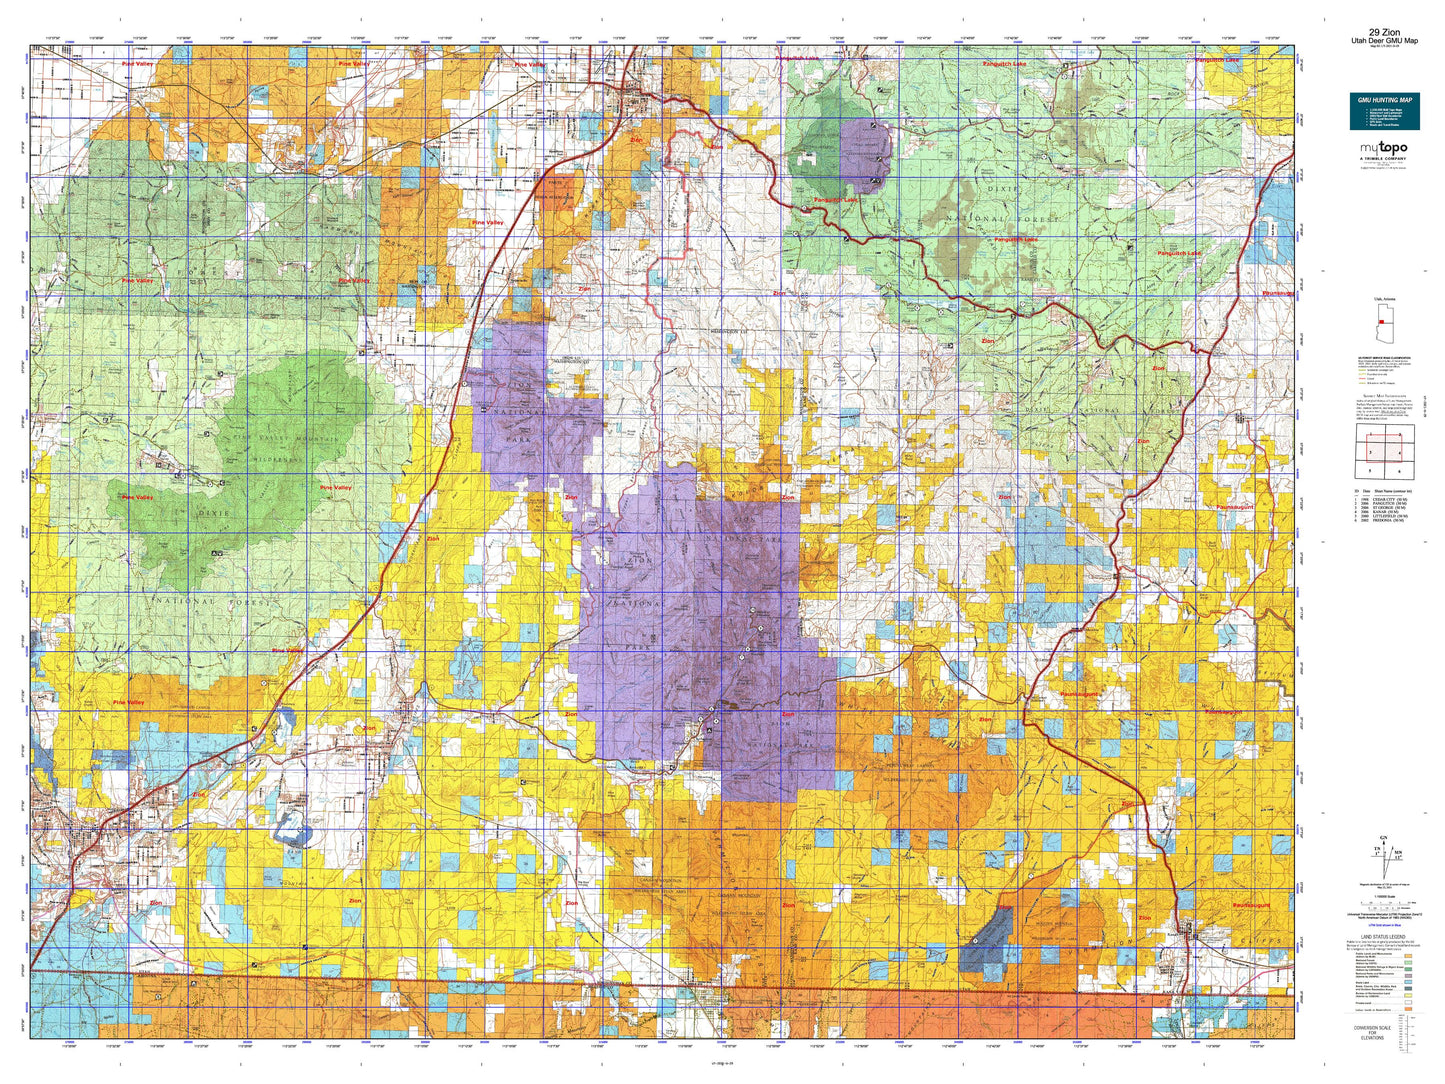 Utah Deer GMU 29 Zion Map Image